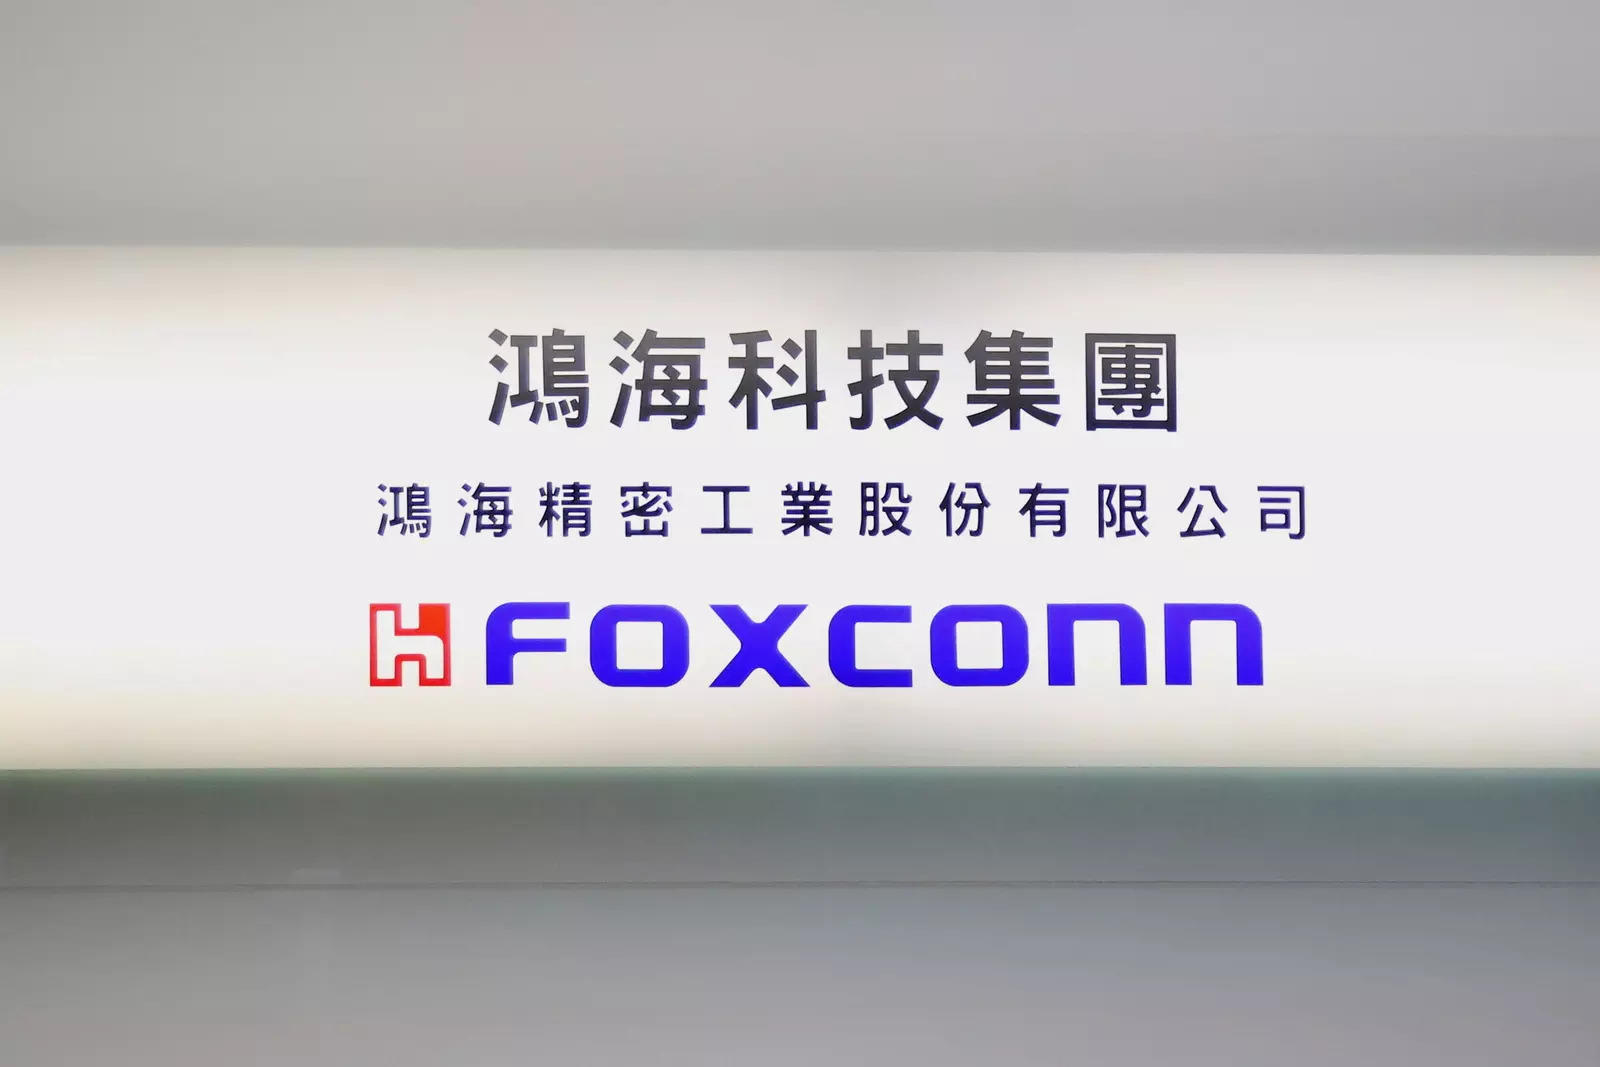 Foxconn subsidiary hit as Taiwan virus cluster grows